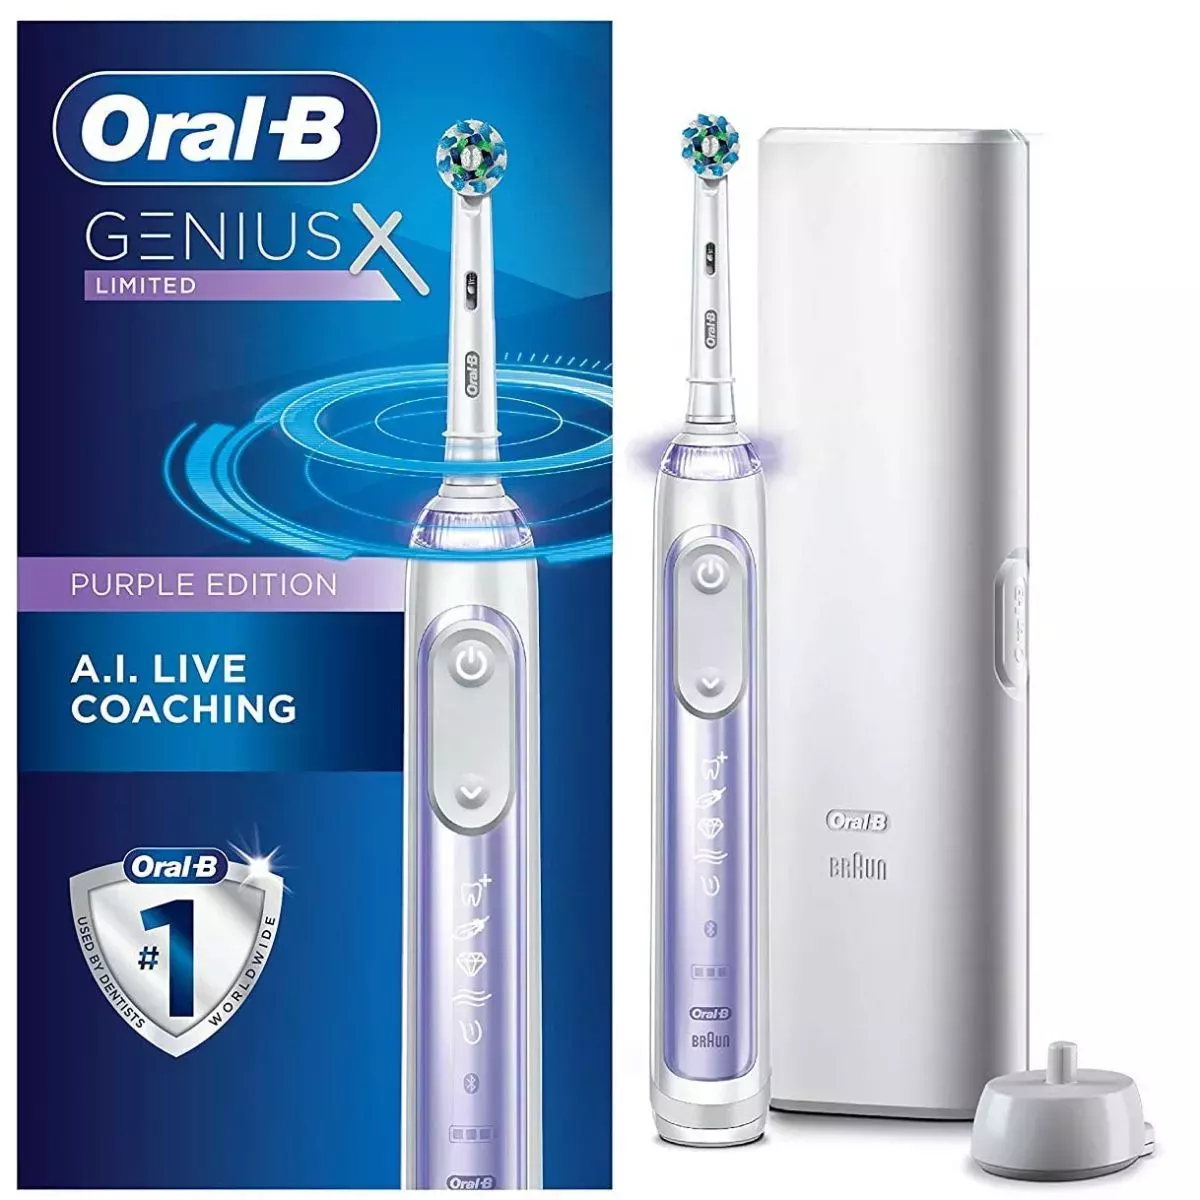 Oferta de cepillo de dientes Oral-B Genius X en el Cyber Monday - Obtenga un 50% de descuento